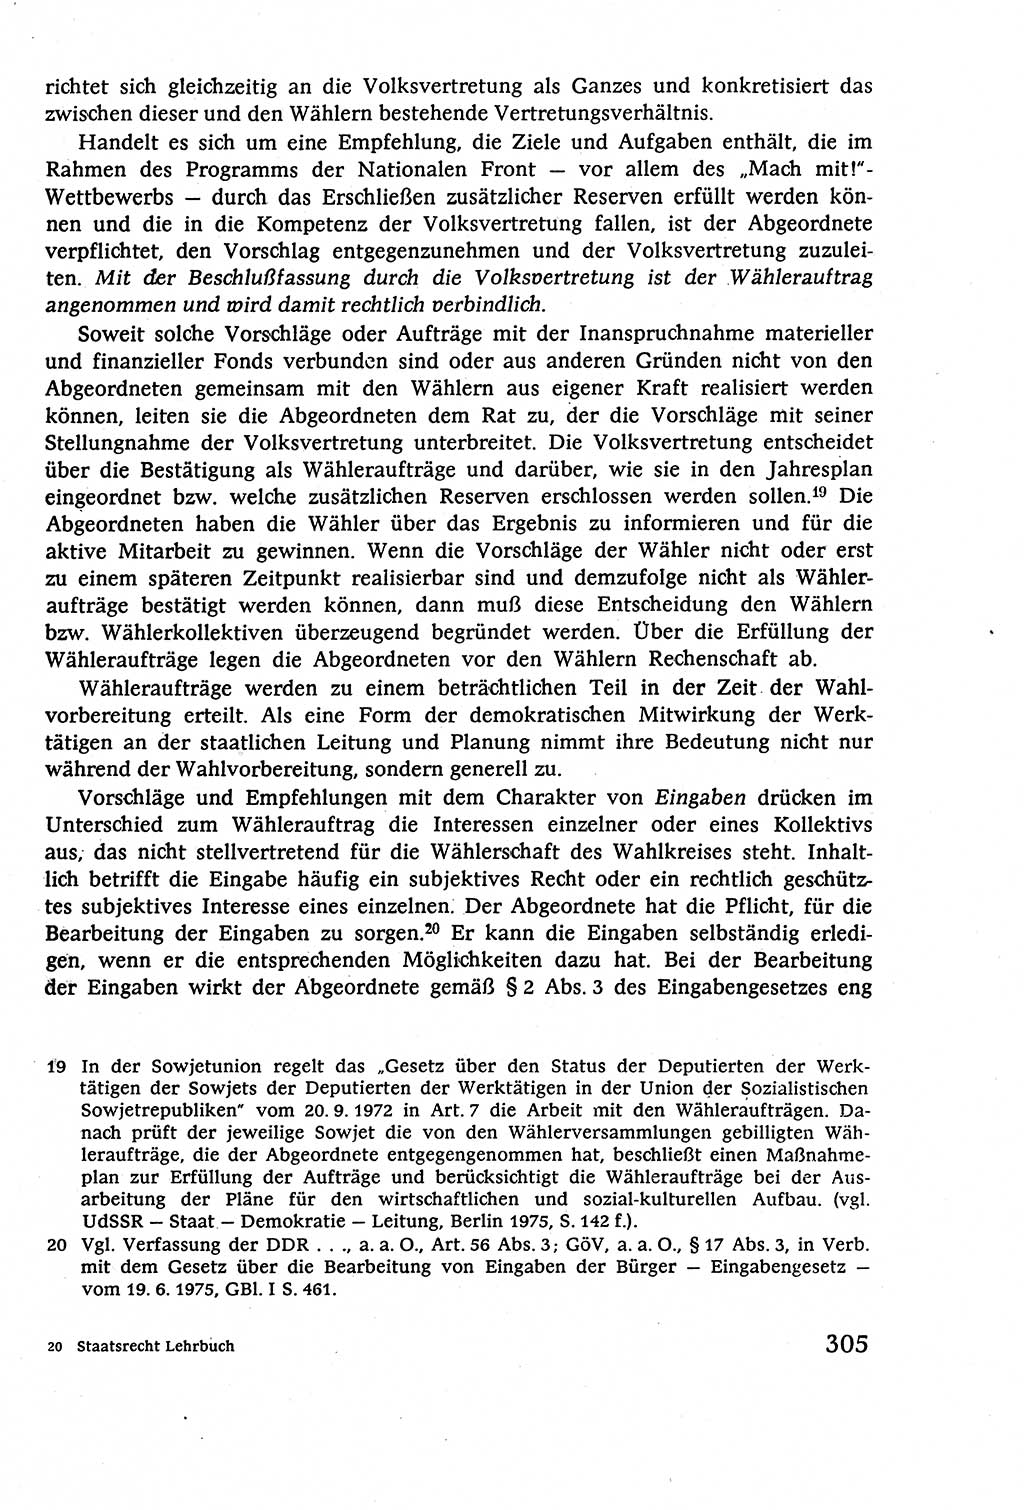 Staatsrecht der DDR (Deutsche Demokratische Republik), Lehrbuch 1977, Seite 305 (St.-R. DDR Lb. 1977, S. 305)